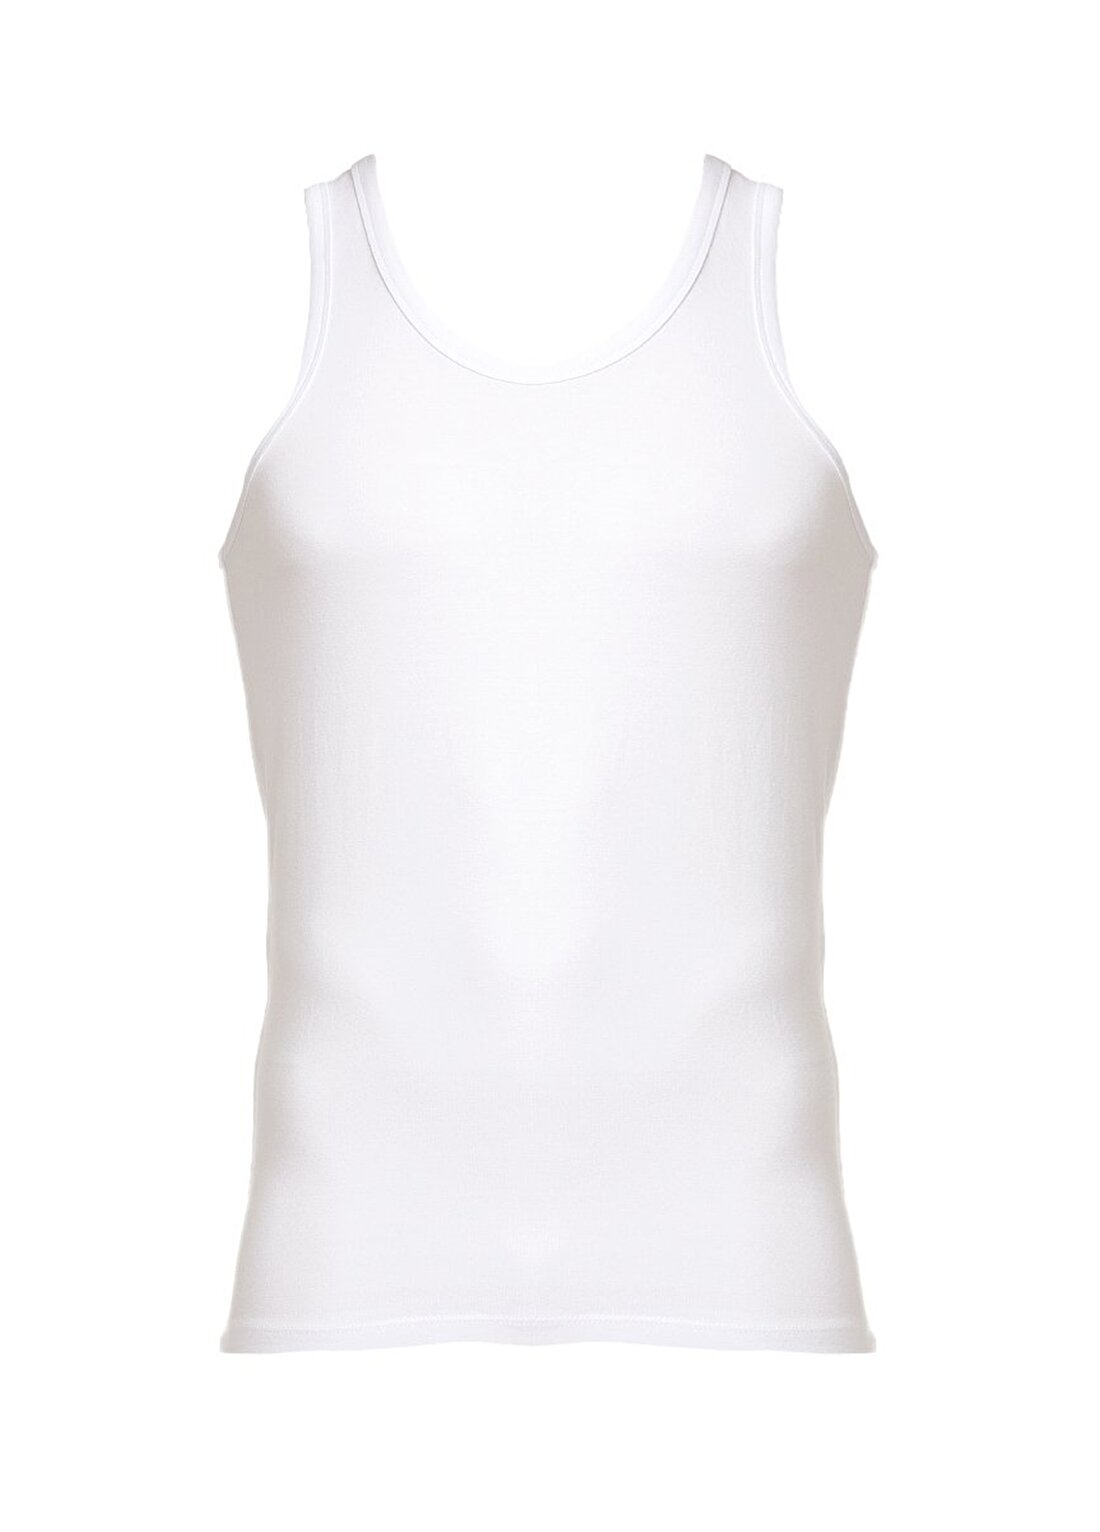 U.S. Polo Assn. Beyaz Erkek T-Shirt 80076 ATLET